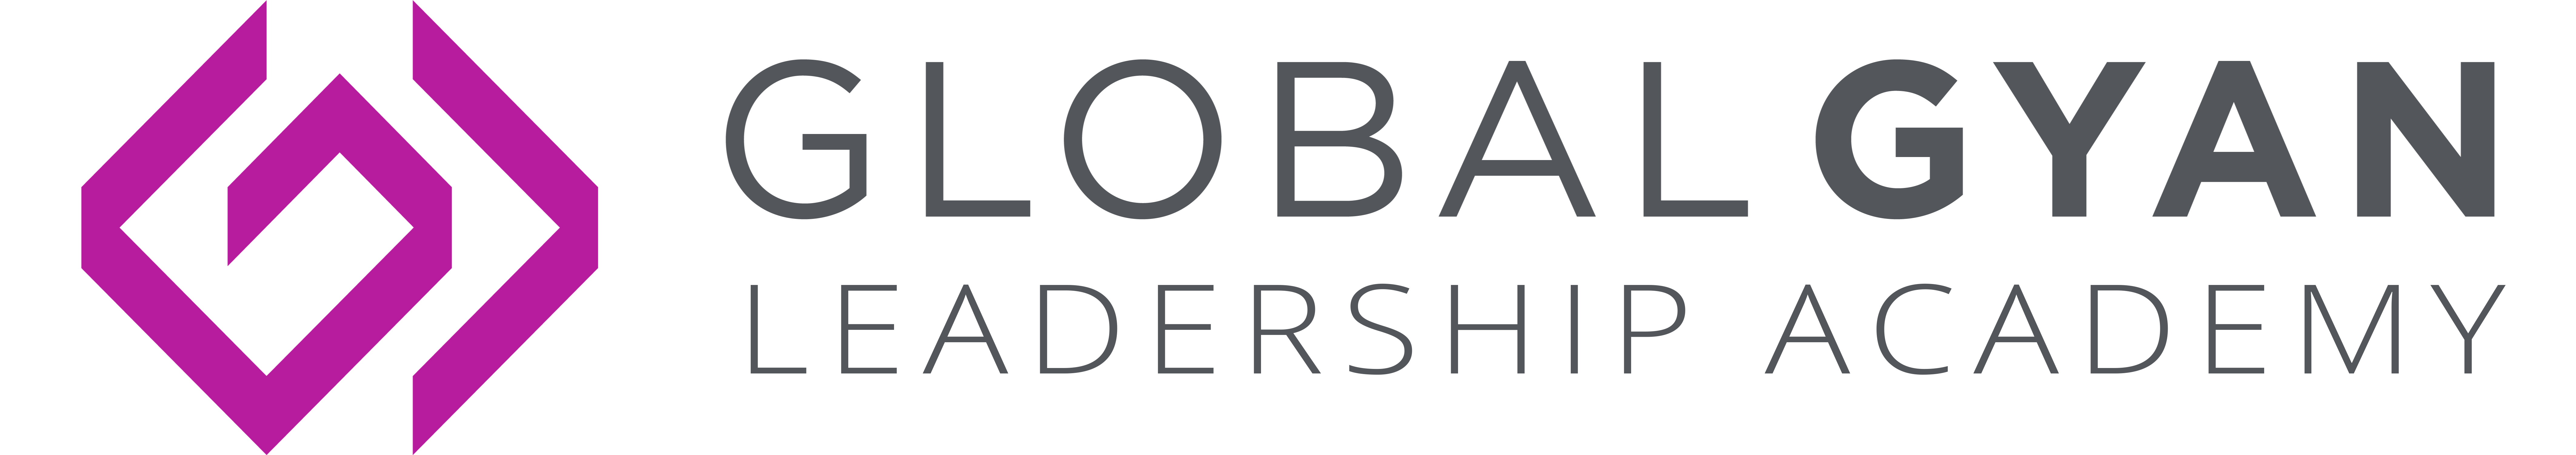 Globalgyan Leadership academy logo